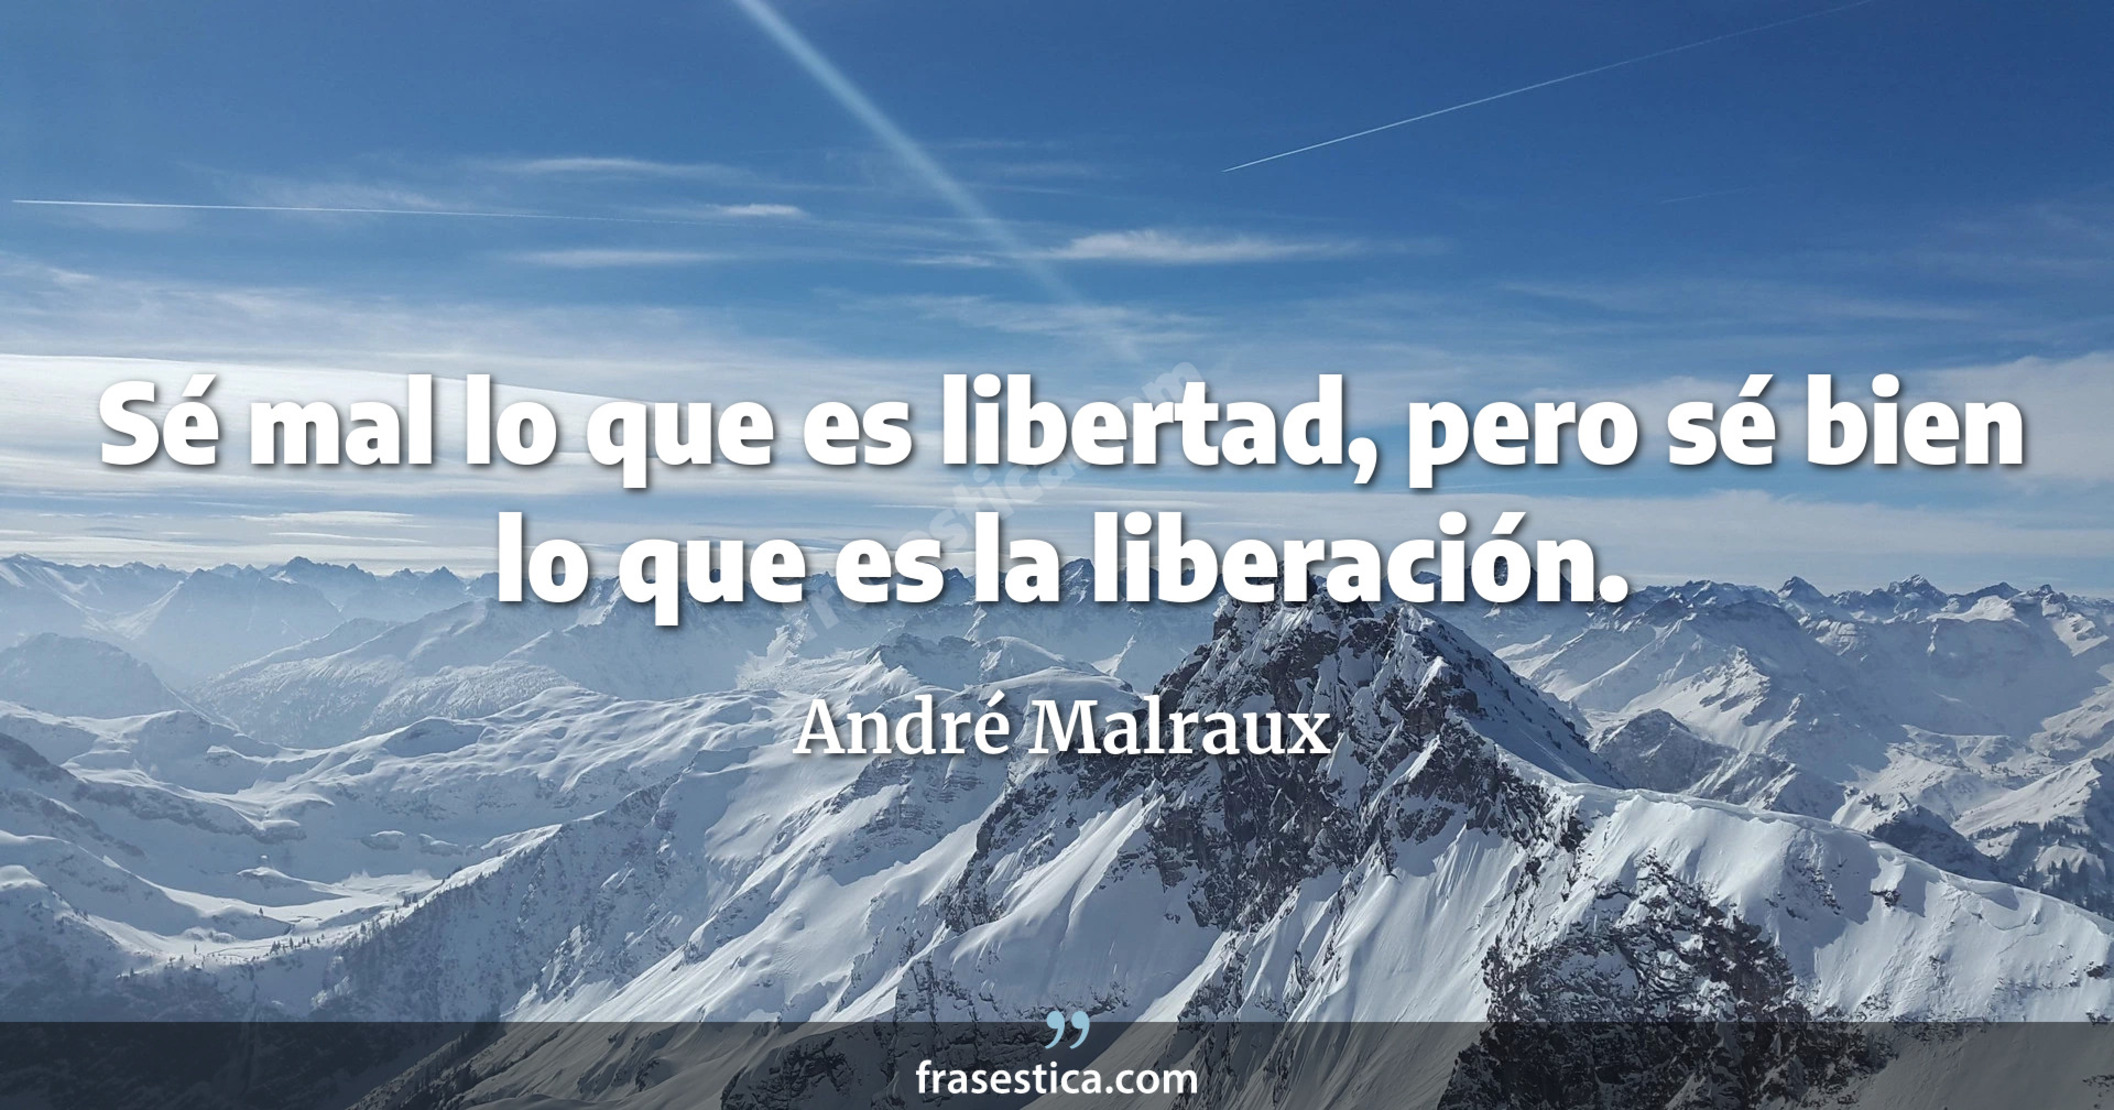 Sé mal lo que es libertad, pero sé bien lo que es la liberación. - André Malraux